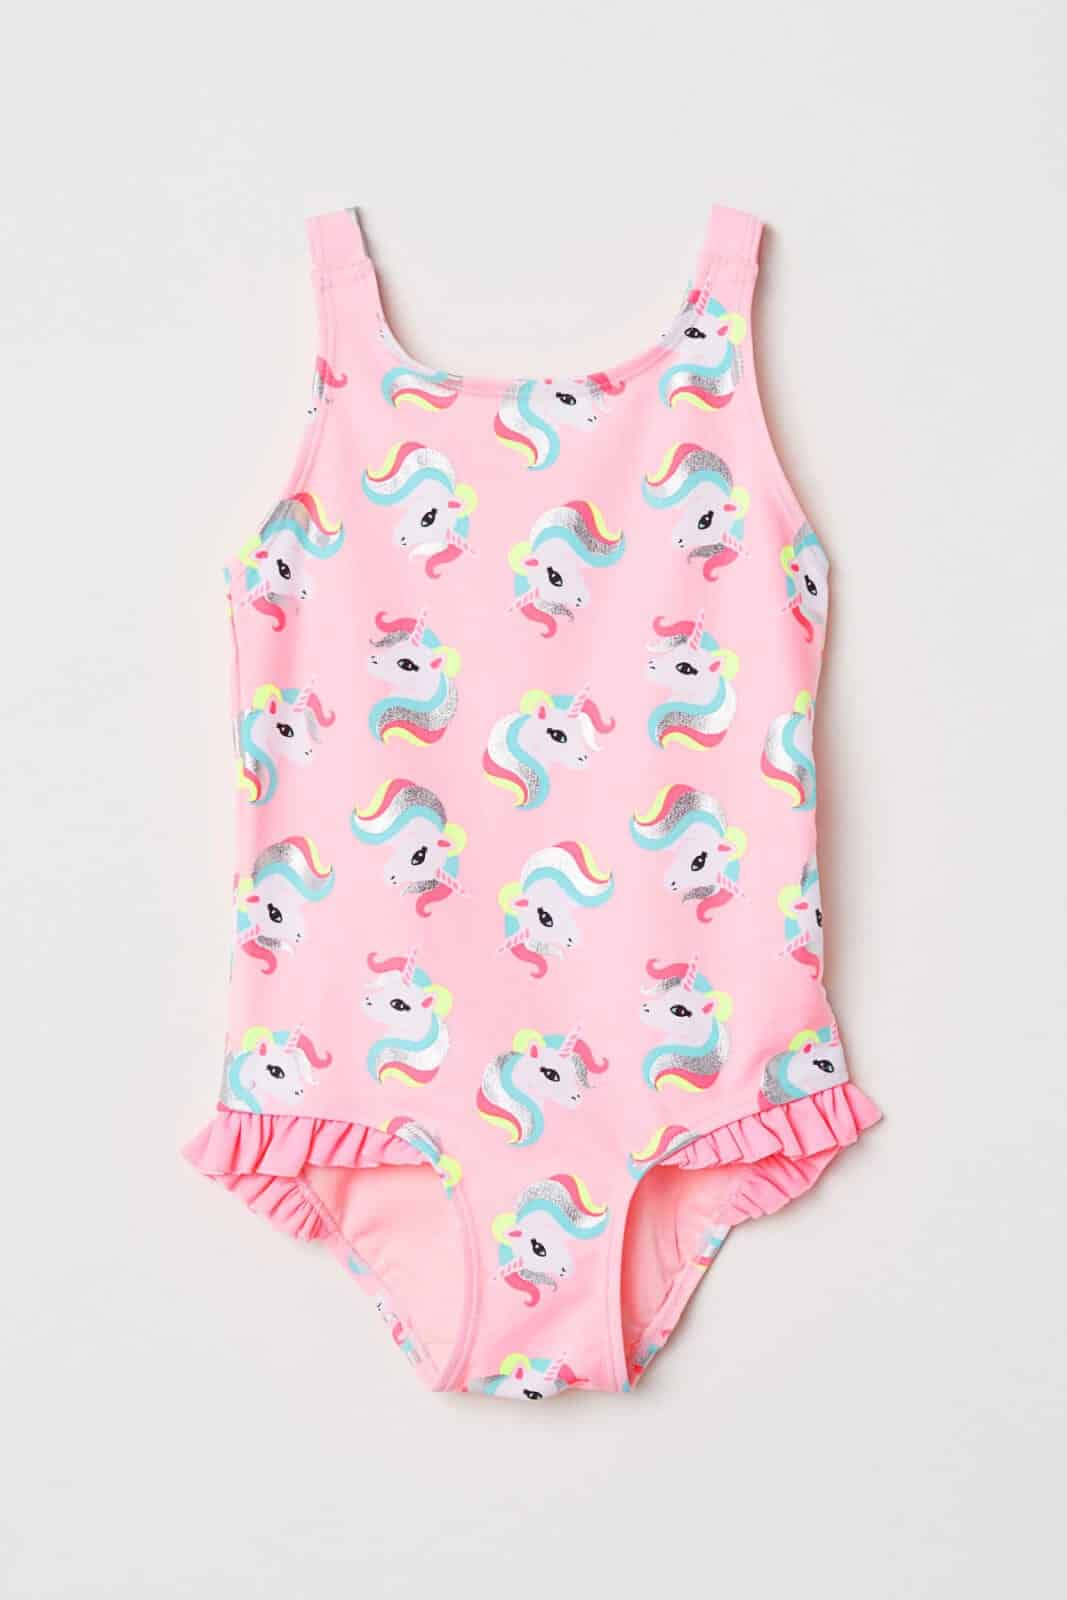 Girls Kids Baby Unicorn Swimwear Swimsuit Swimming Costume Bathing Suit Summer 